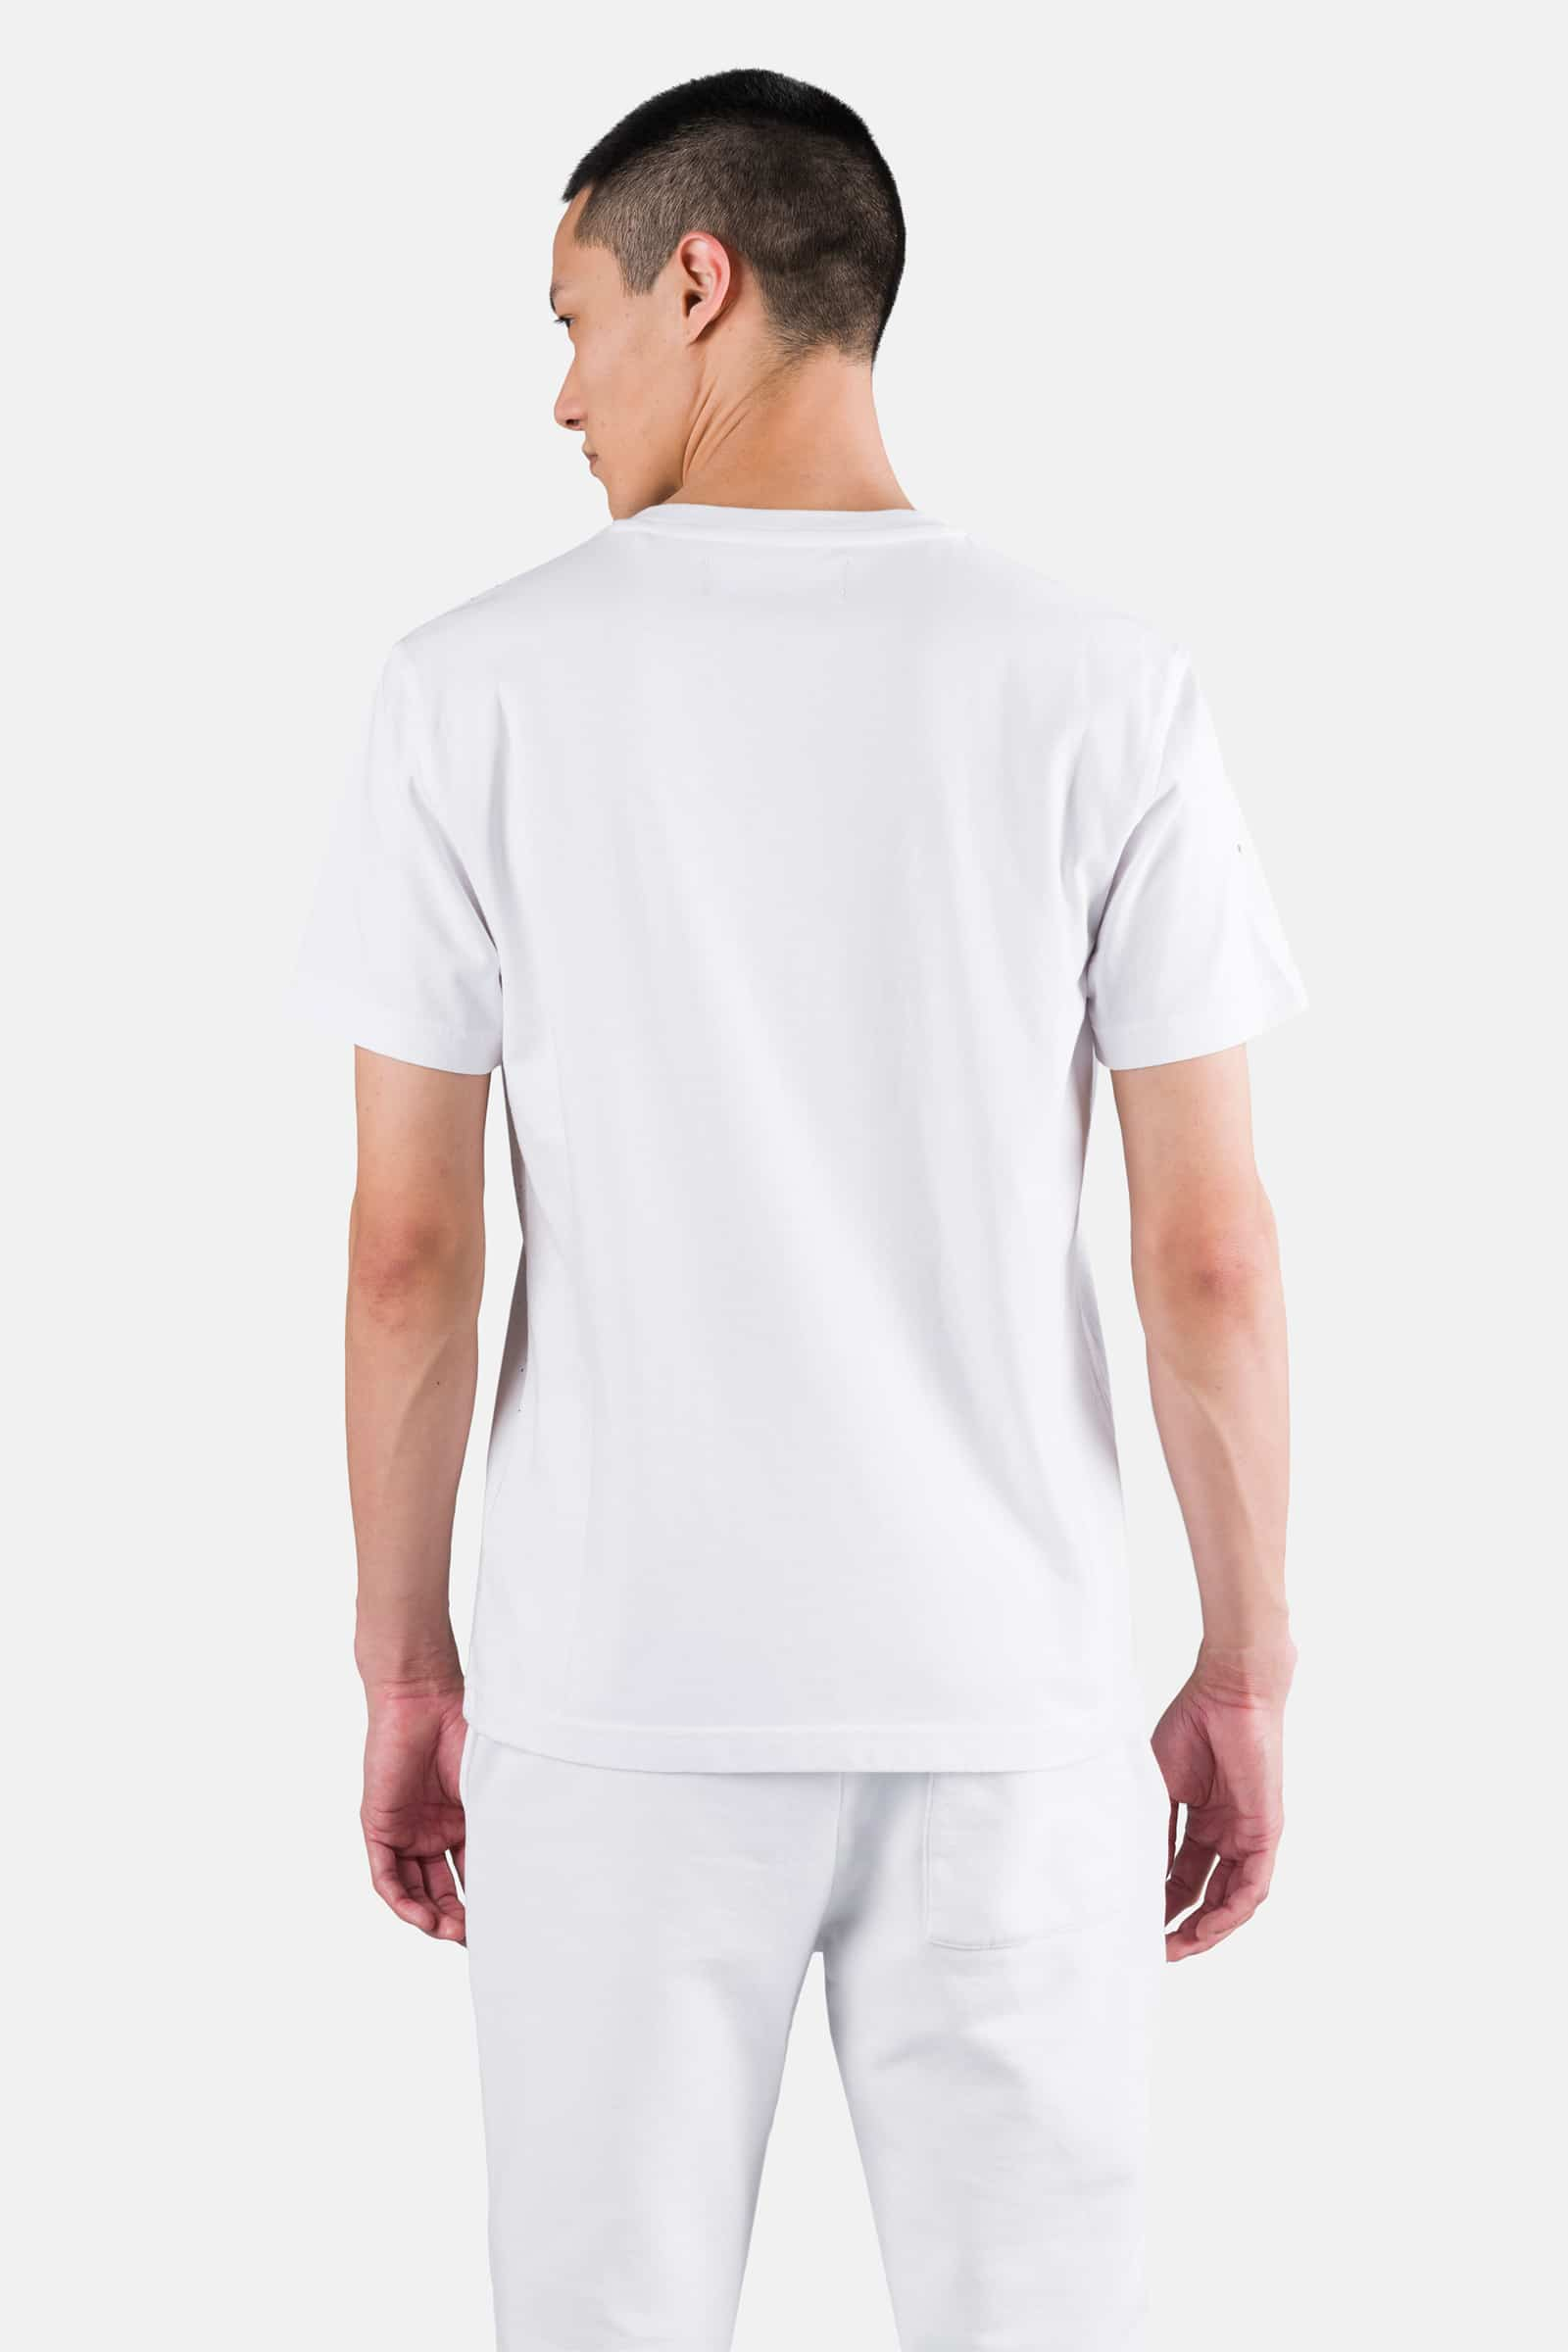 PRINTED SKULL TEE - WHITE PAINT - Hydrogen - Luxury Sportwear